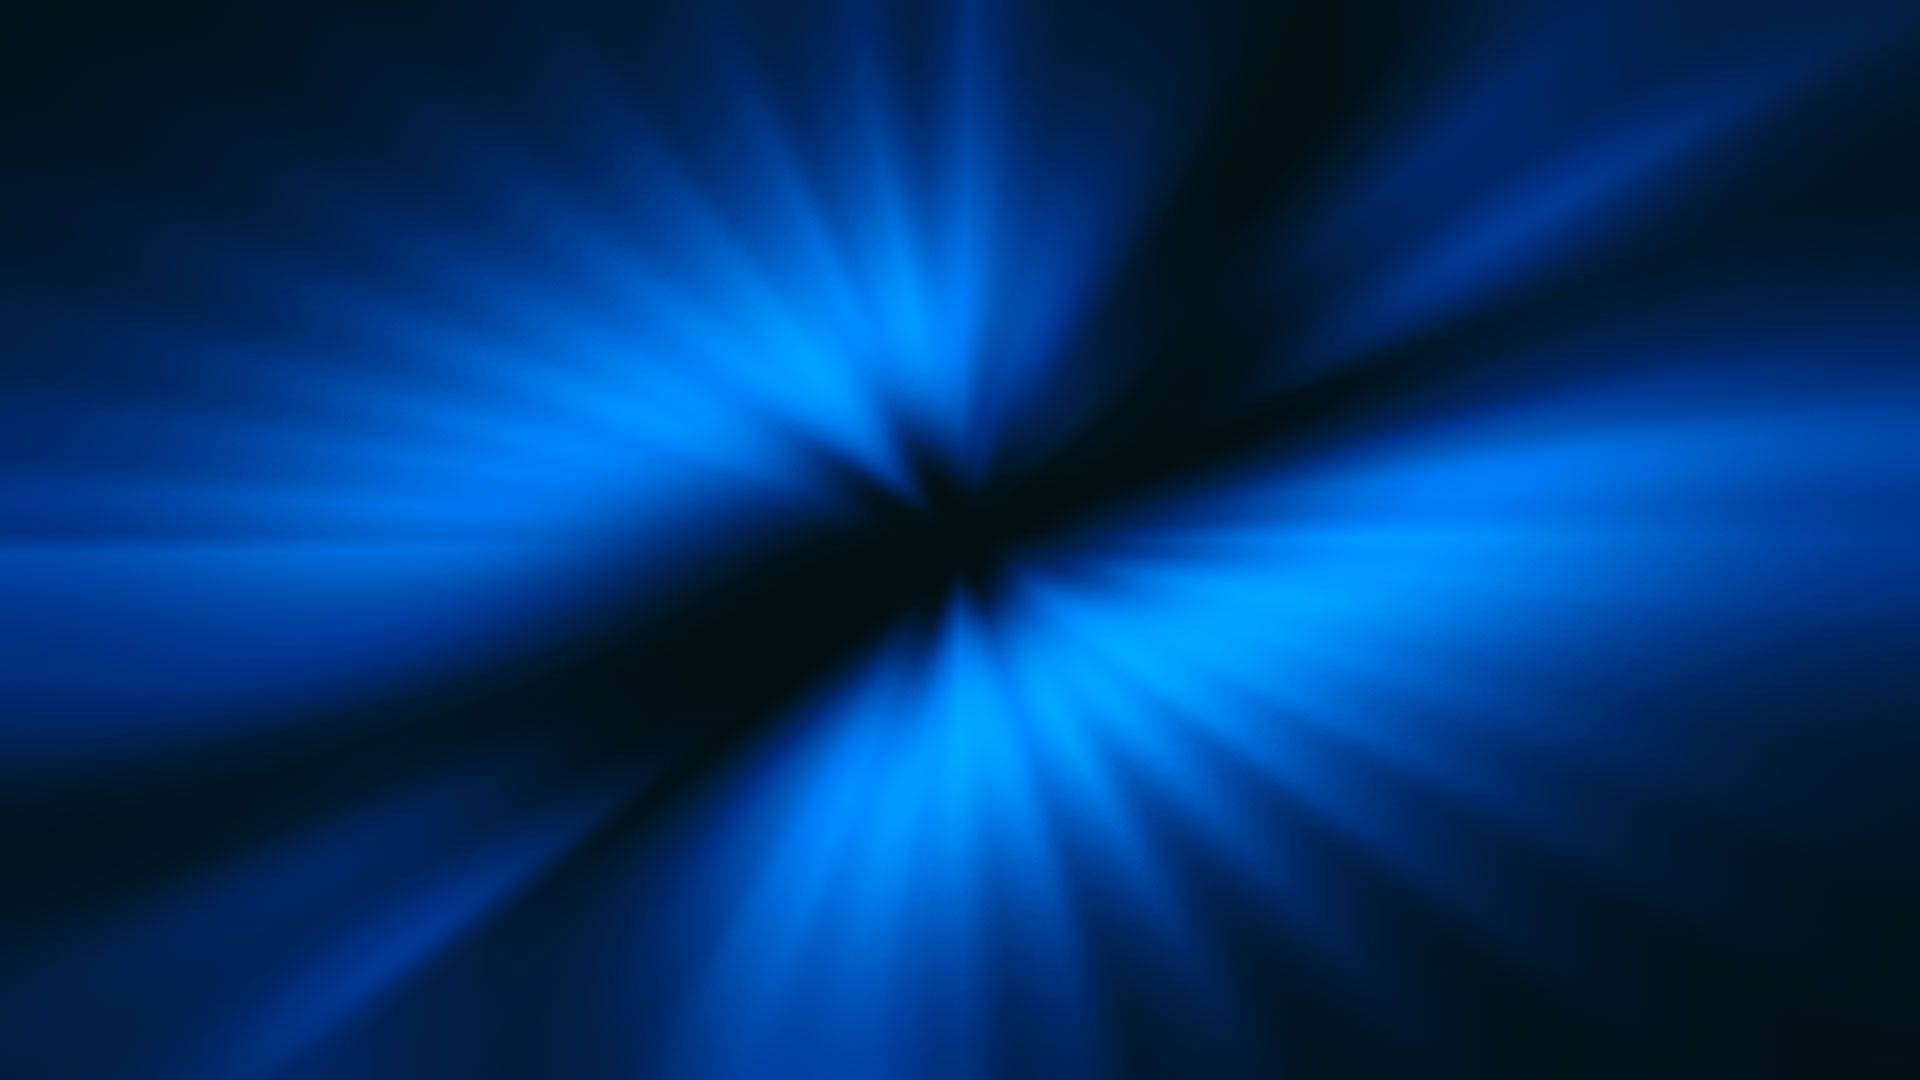 Dark Space Background Image